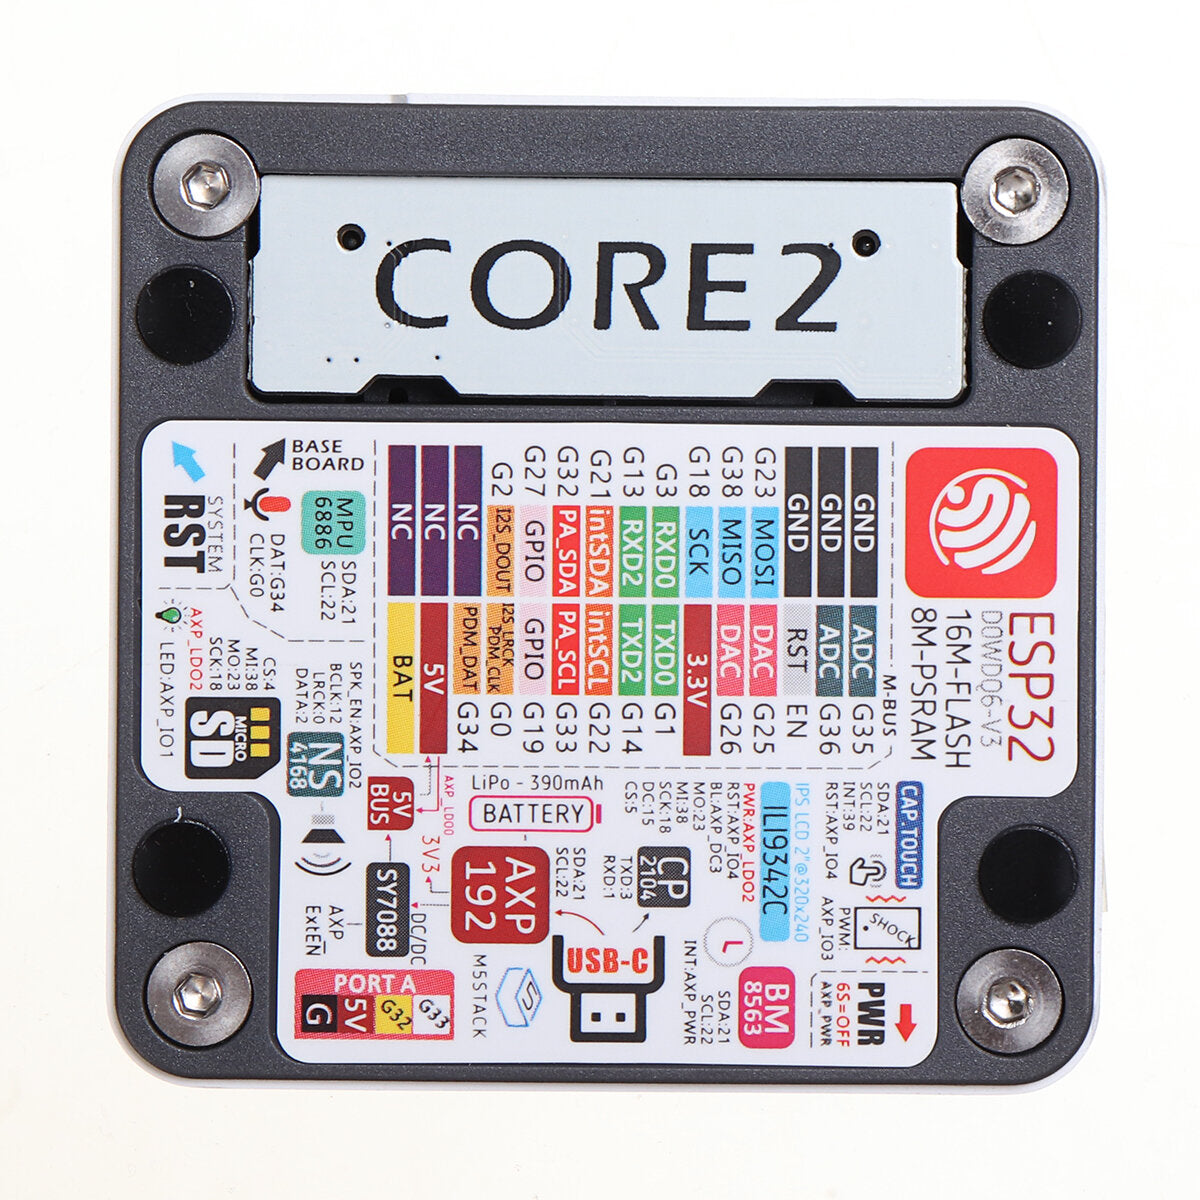 m5stack core2 esp32 met touch screen development board kit wifi bluetooth grafische programmering wifi ble iot m5stack voor arduino - producten die werken met officiële arduino-boards